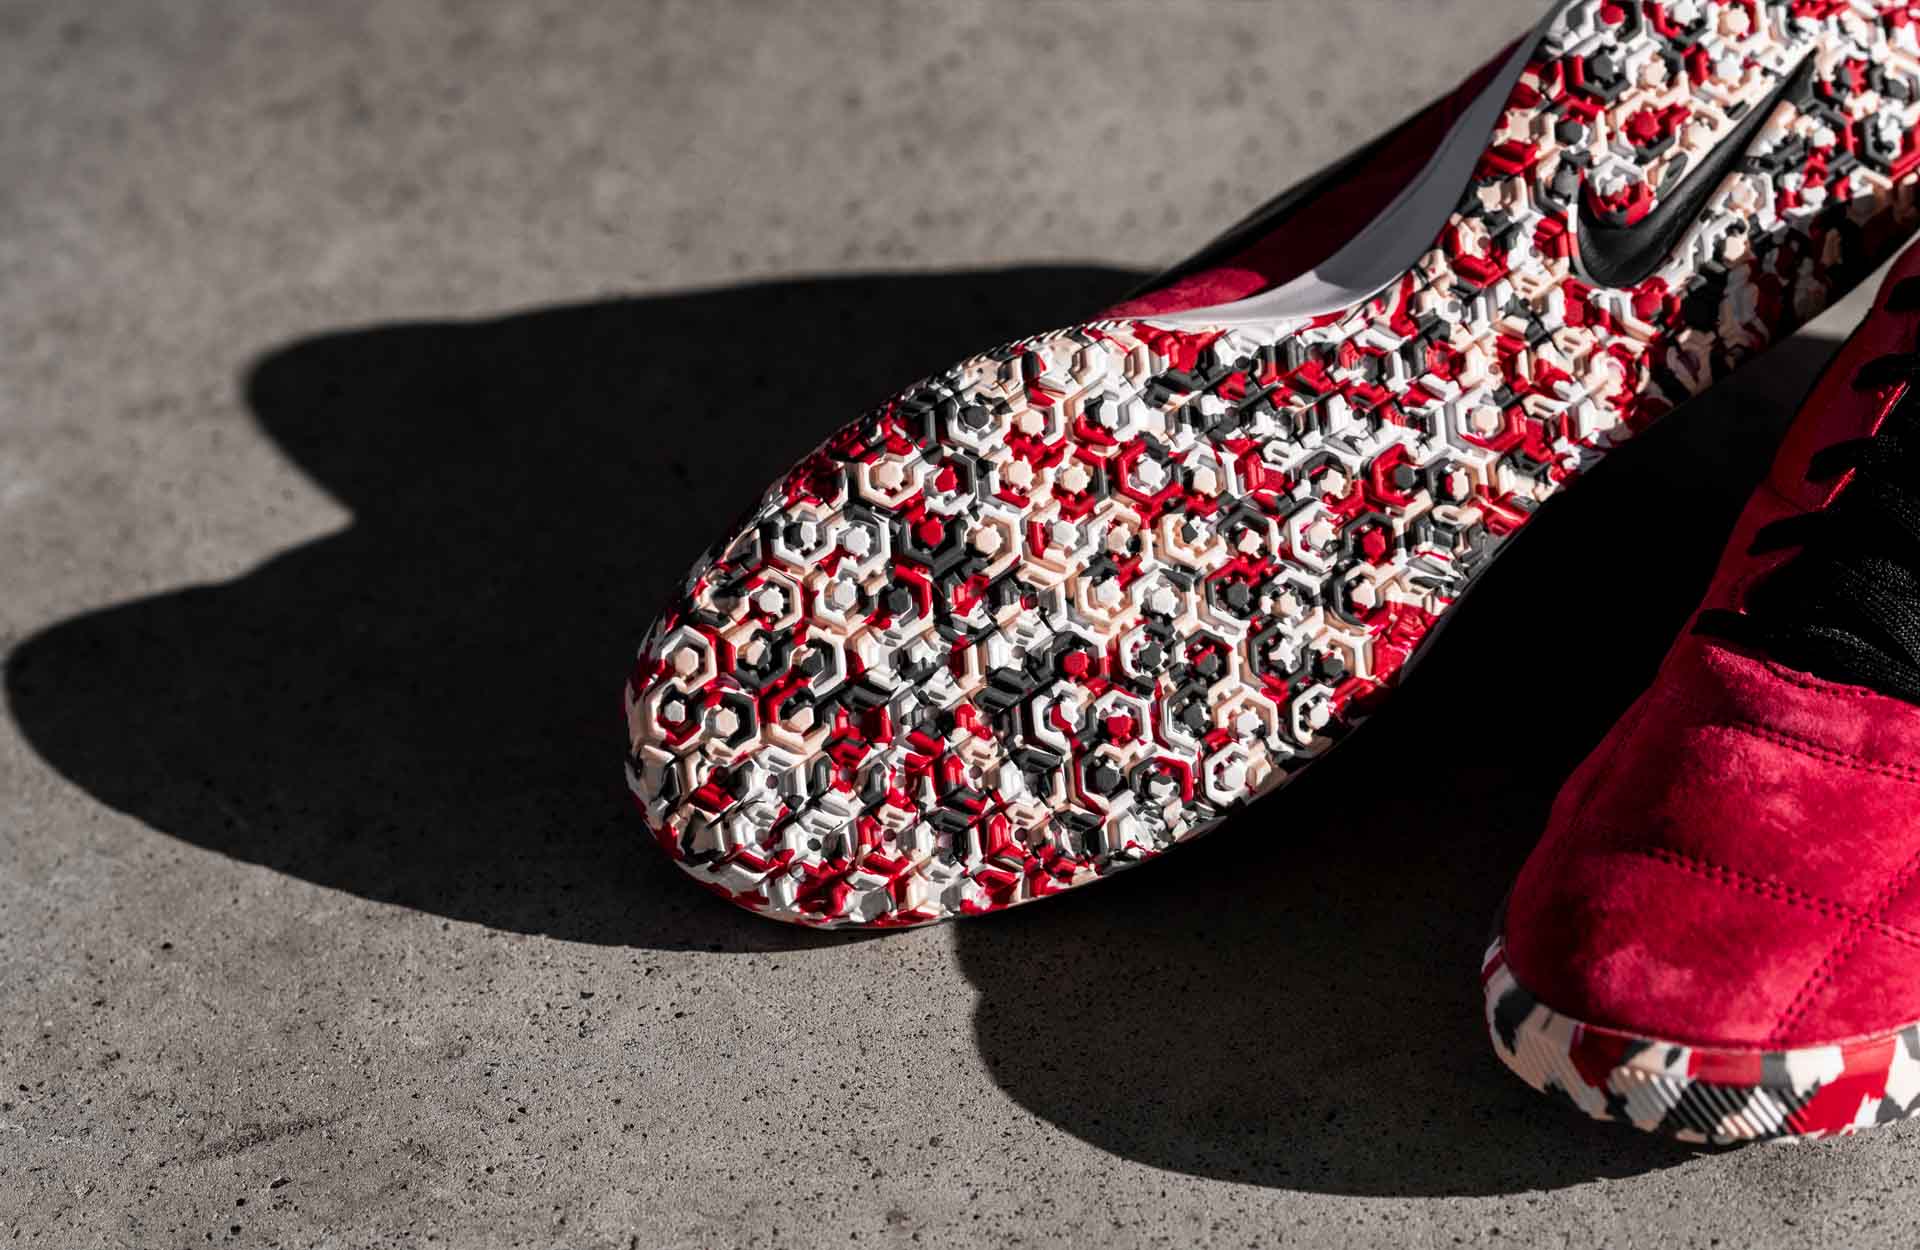 Giày đá banh Nike Premier Sala II mang phong cách cổ điển với chất liệu da lộn cảm giác